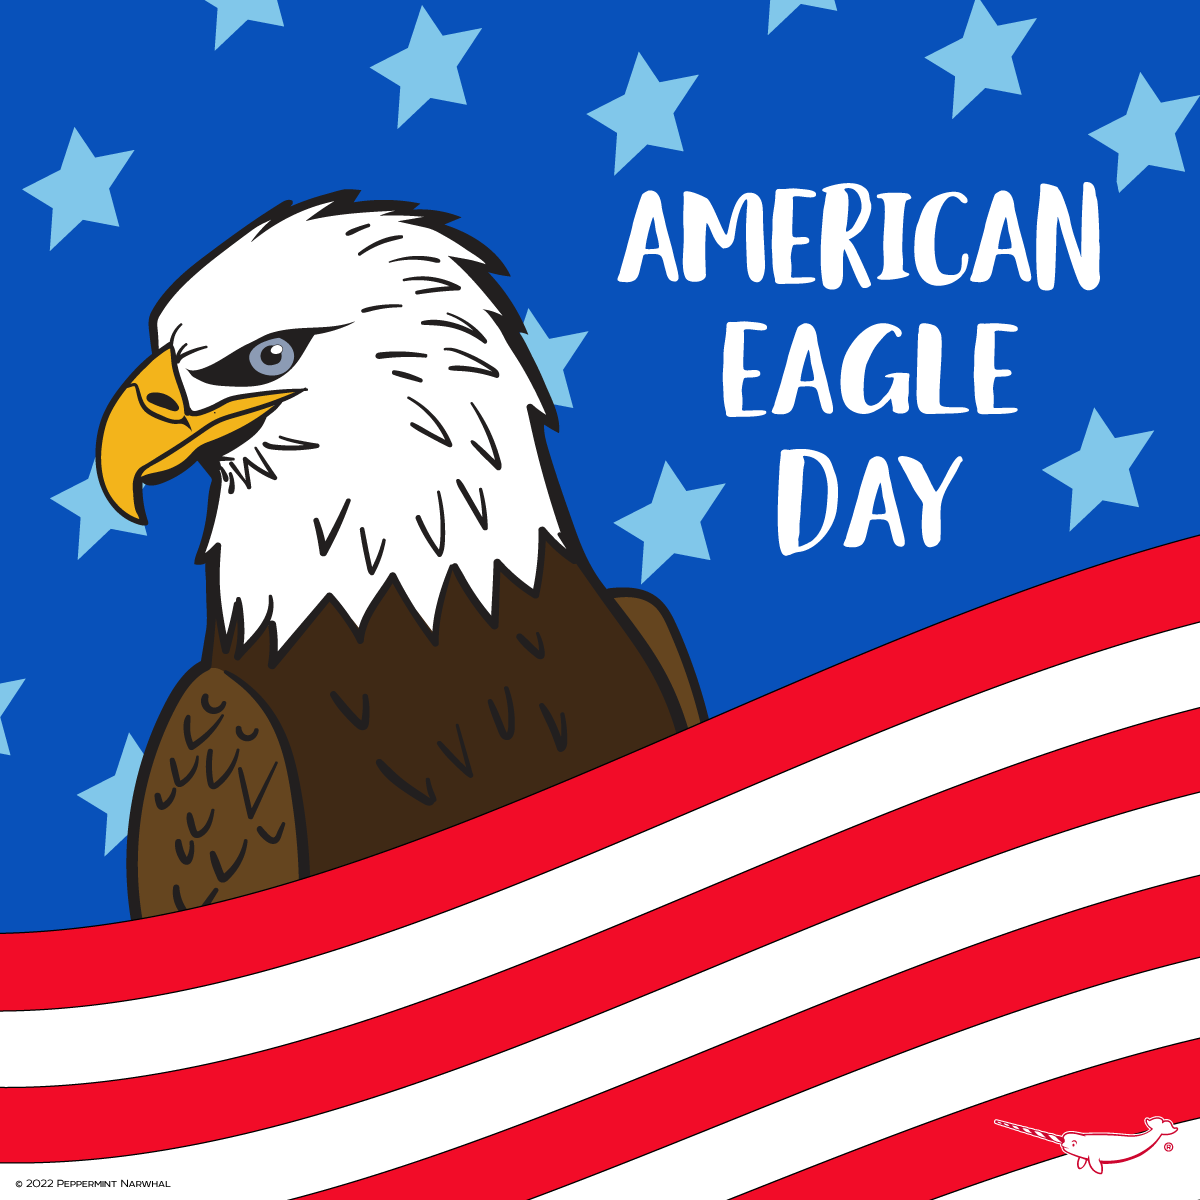 #AmericanEagleDay

Shop #PeppermintNarwhal:
peppermintnarwhal.com

#AmericanEagle #BaldEagle #Eagle